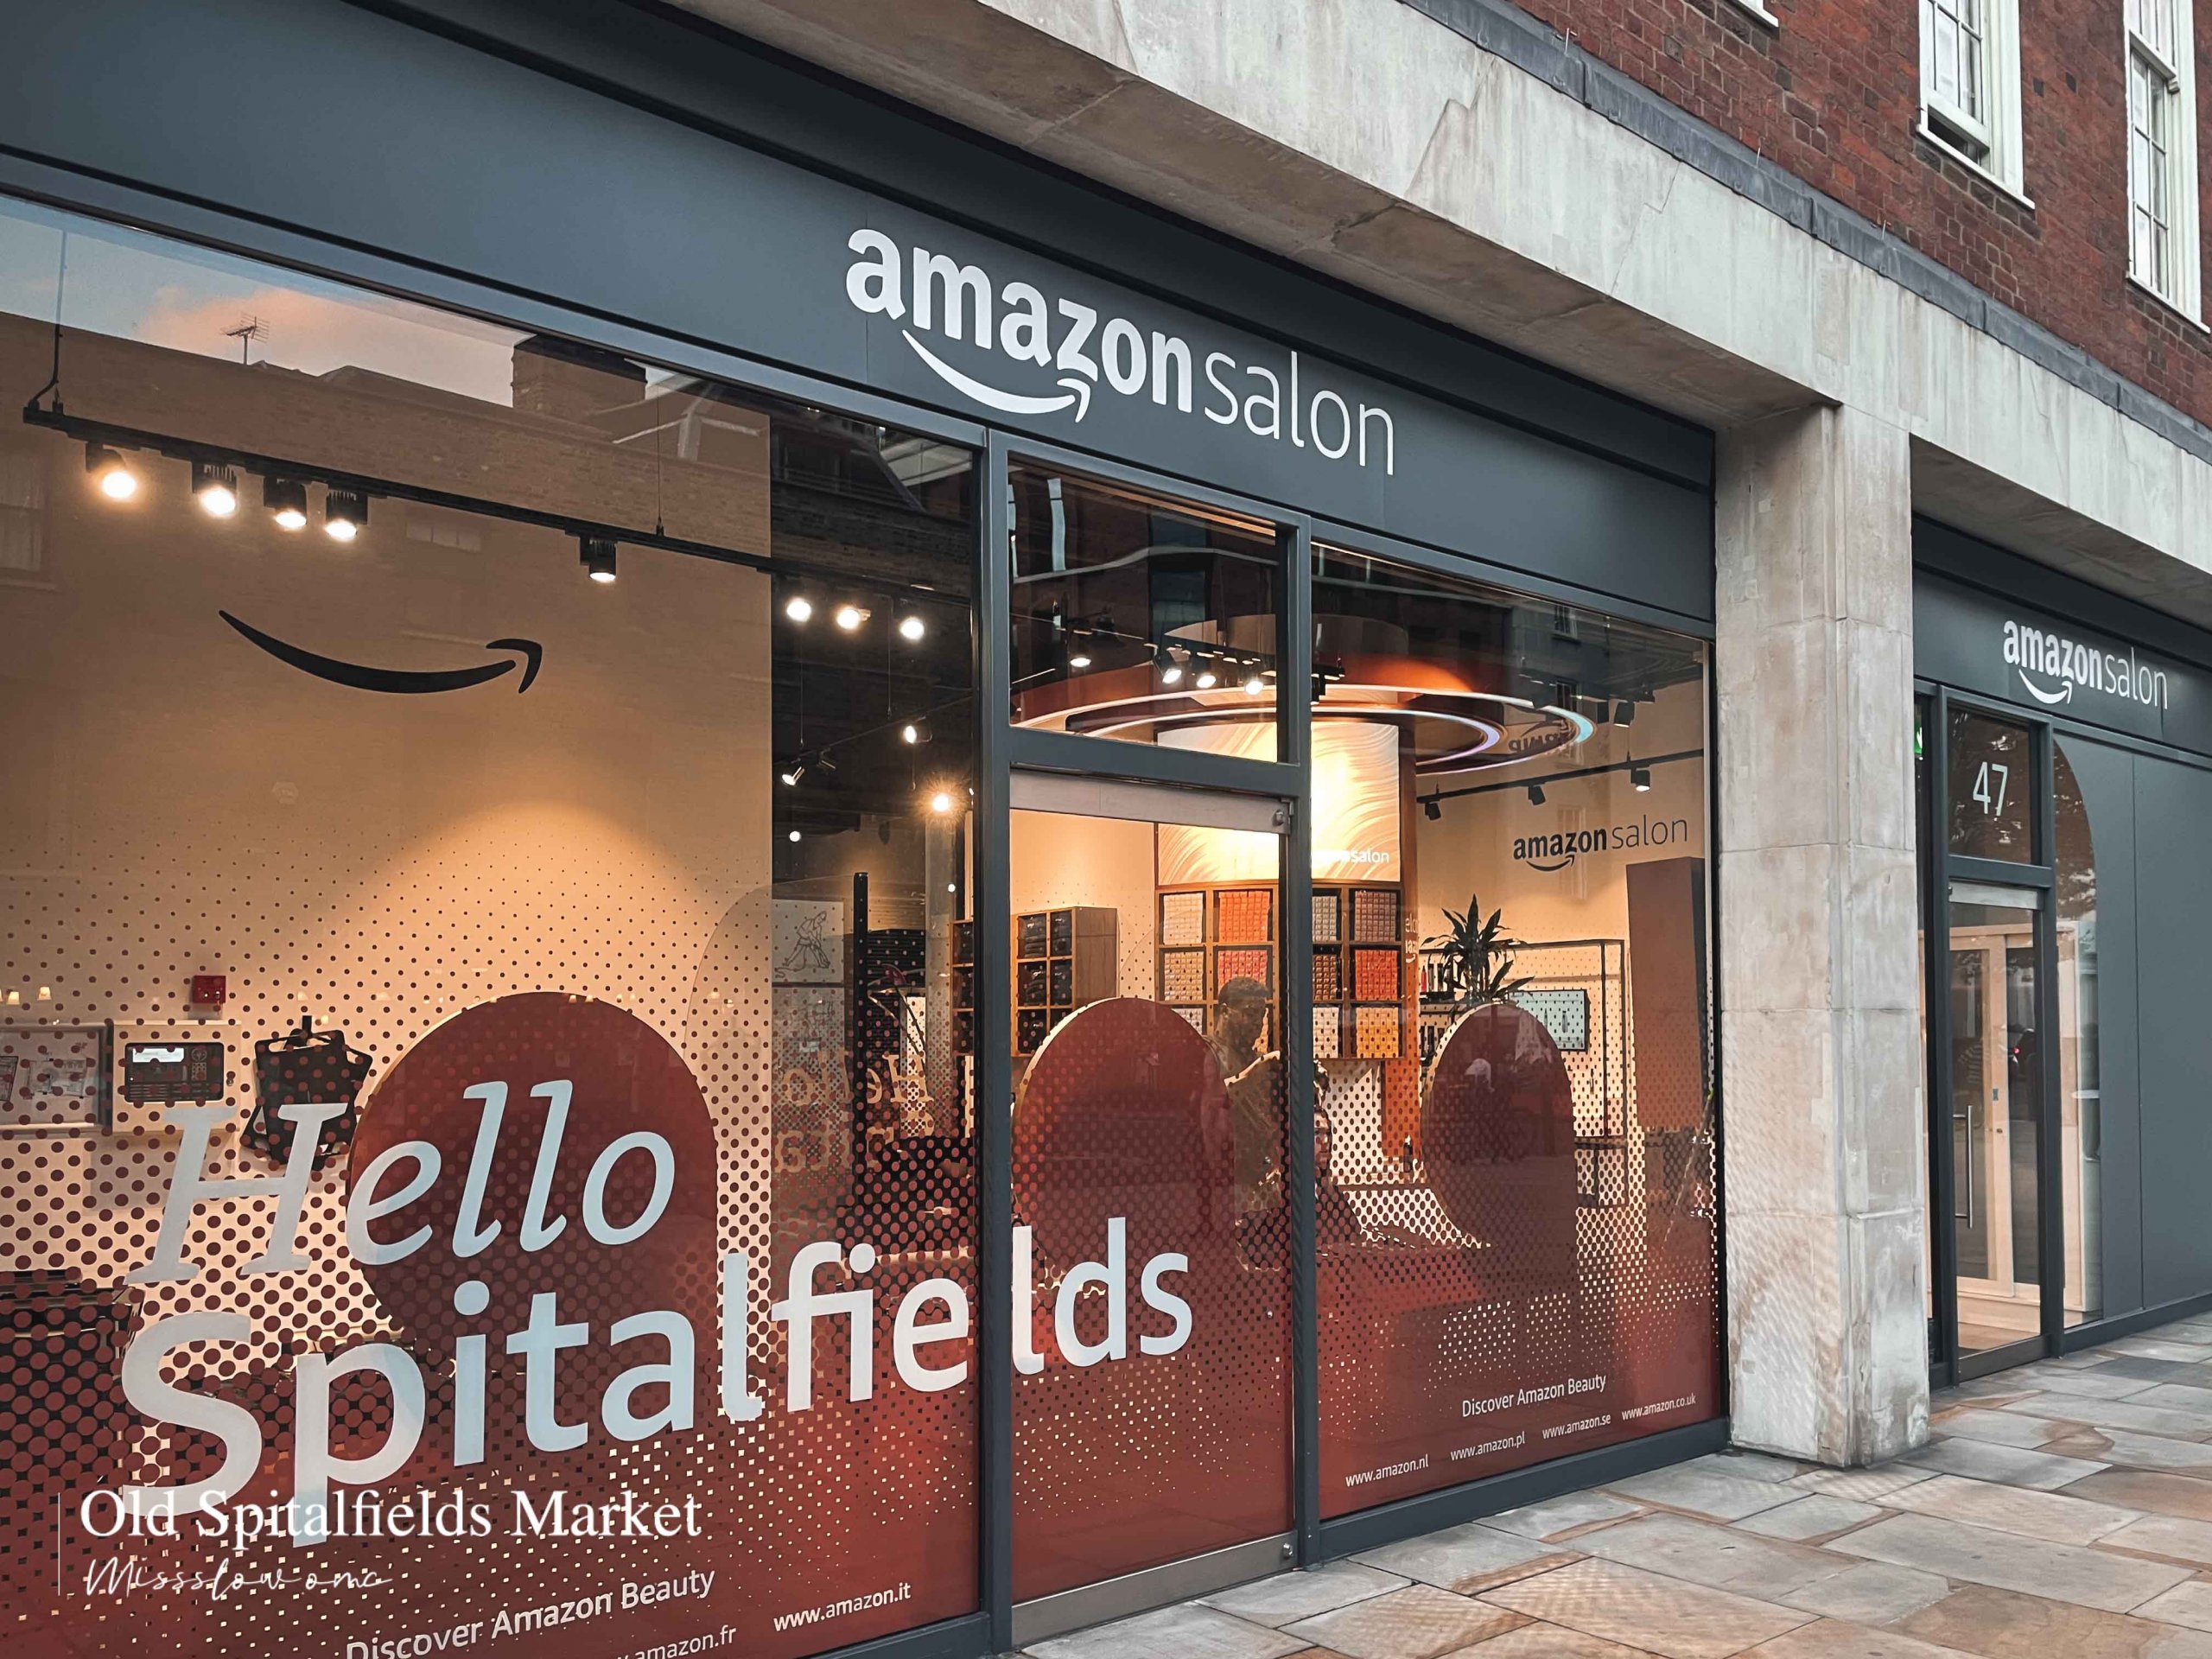 Old Spitalfields Market-Amazon Salon店面外觀